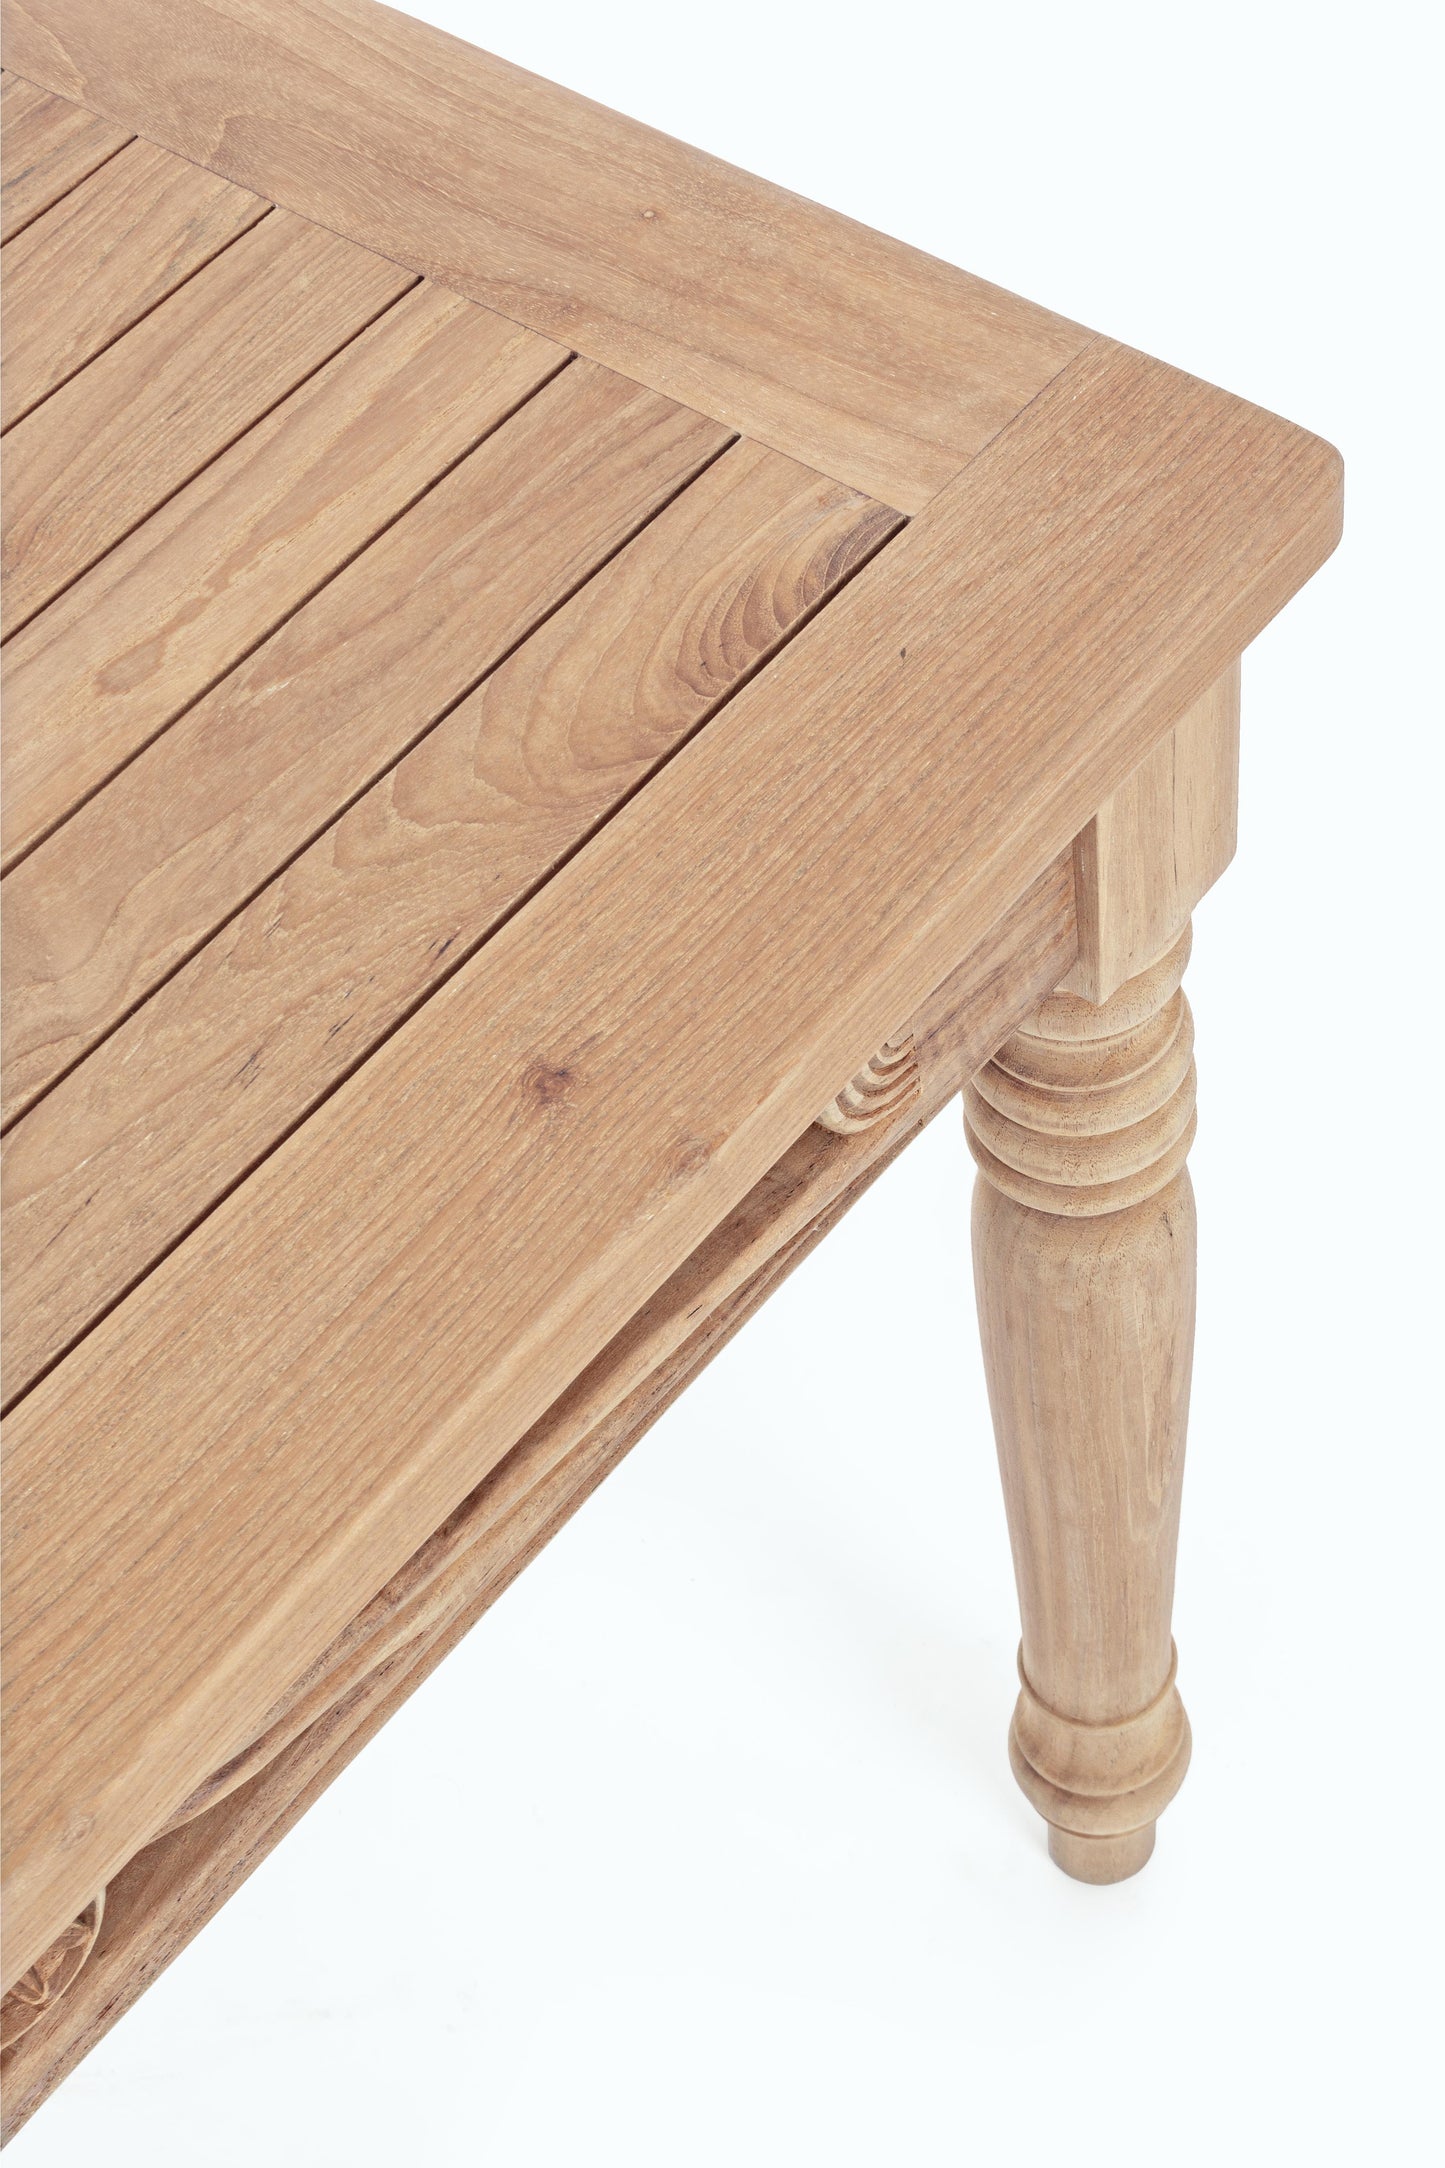 Tavolo intarsiato a mano in legno massiccio di teak 150X84 SCONTO 20% - lapagoda.net